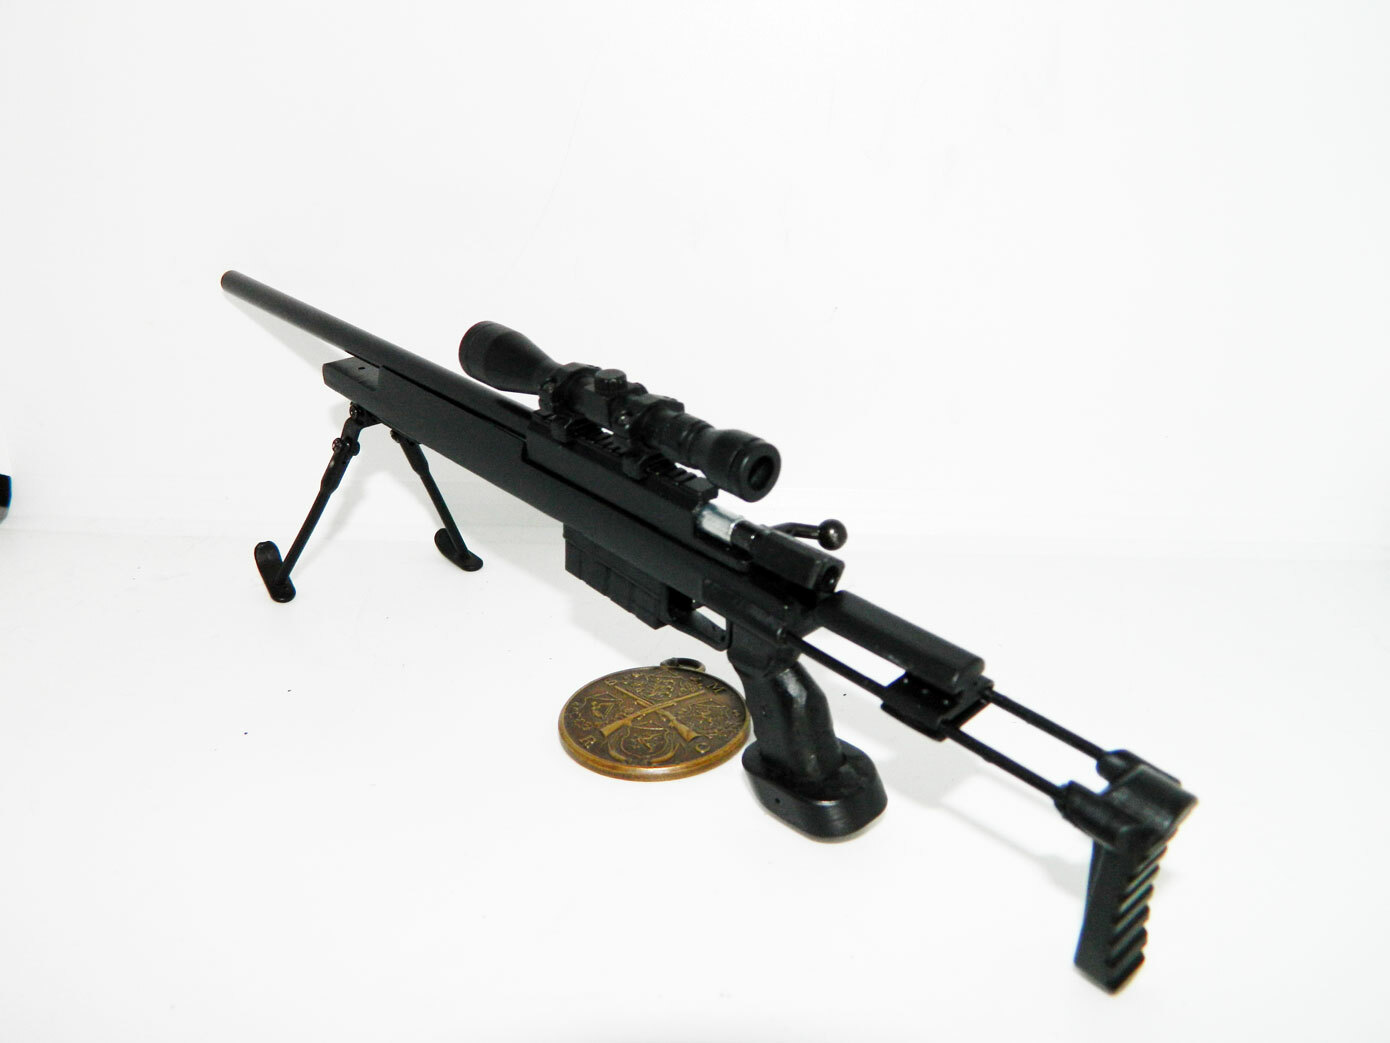 Awp винтовка модель фото 17